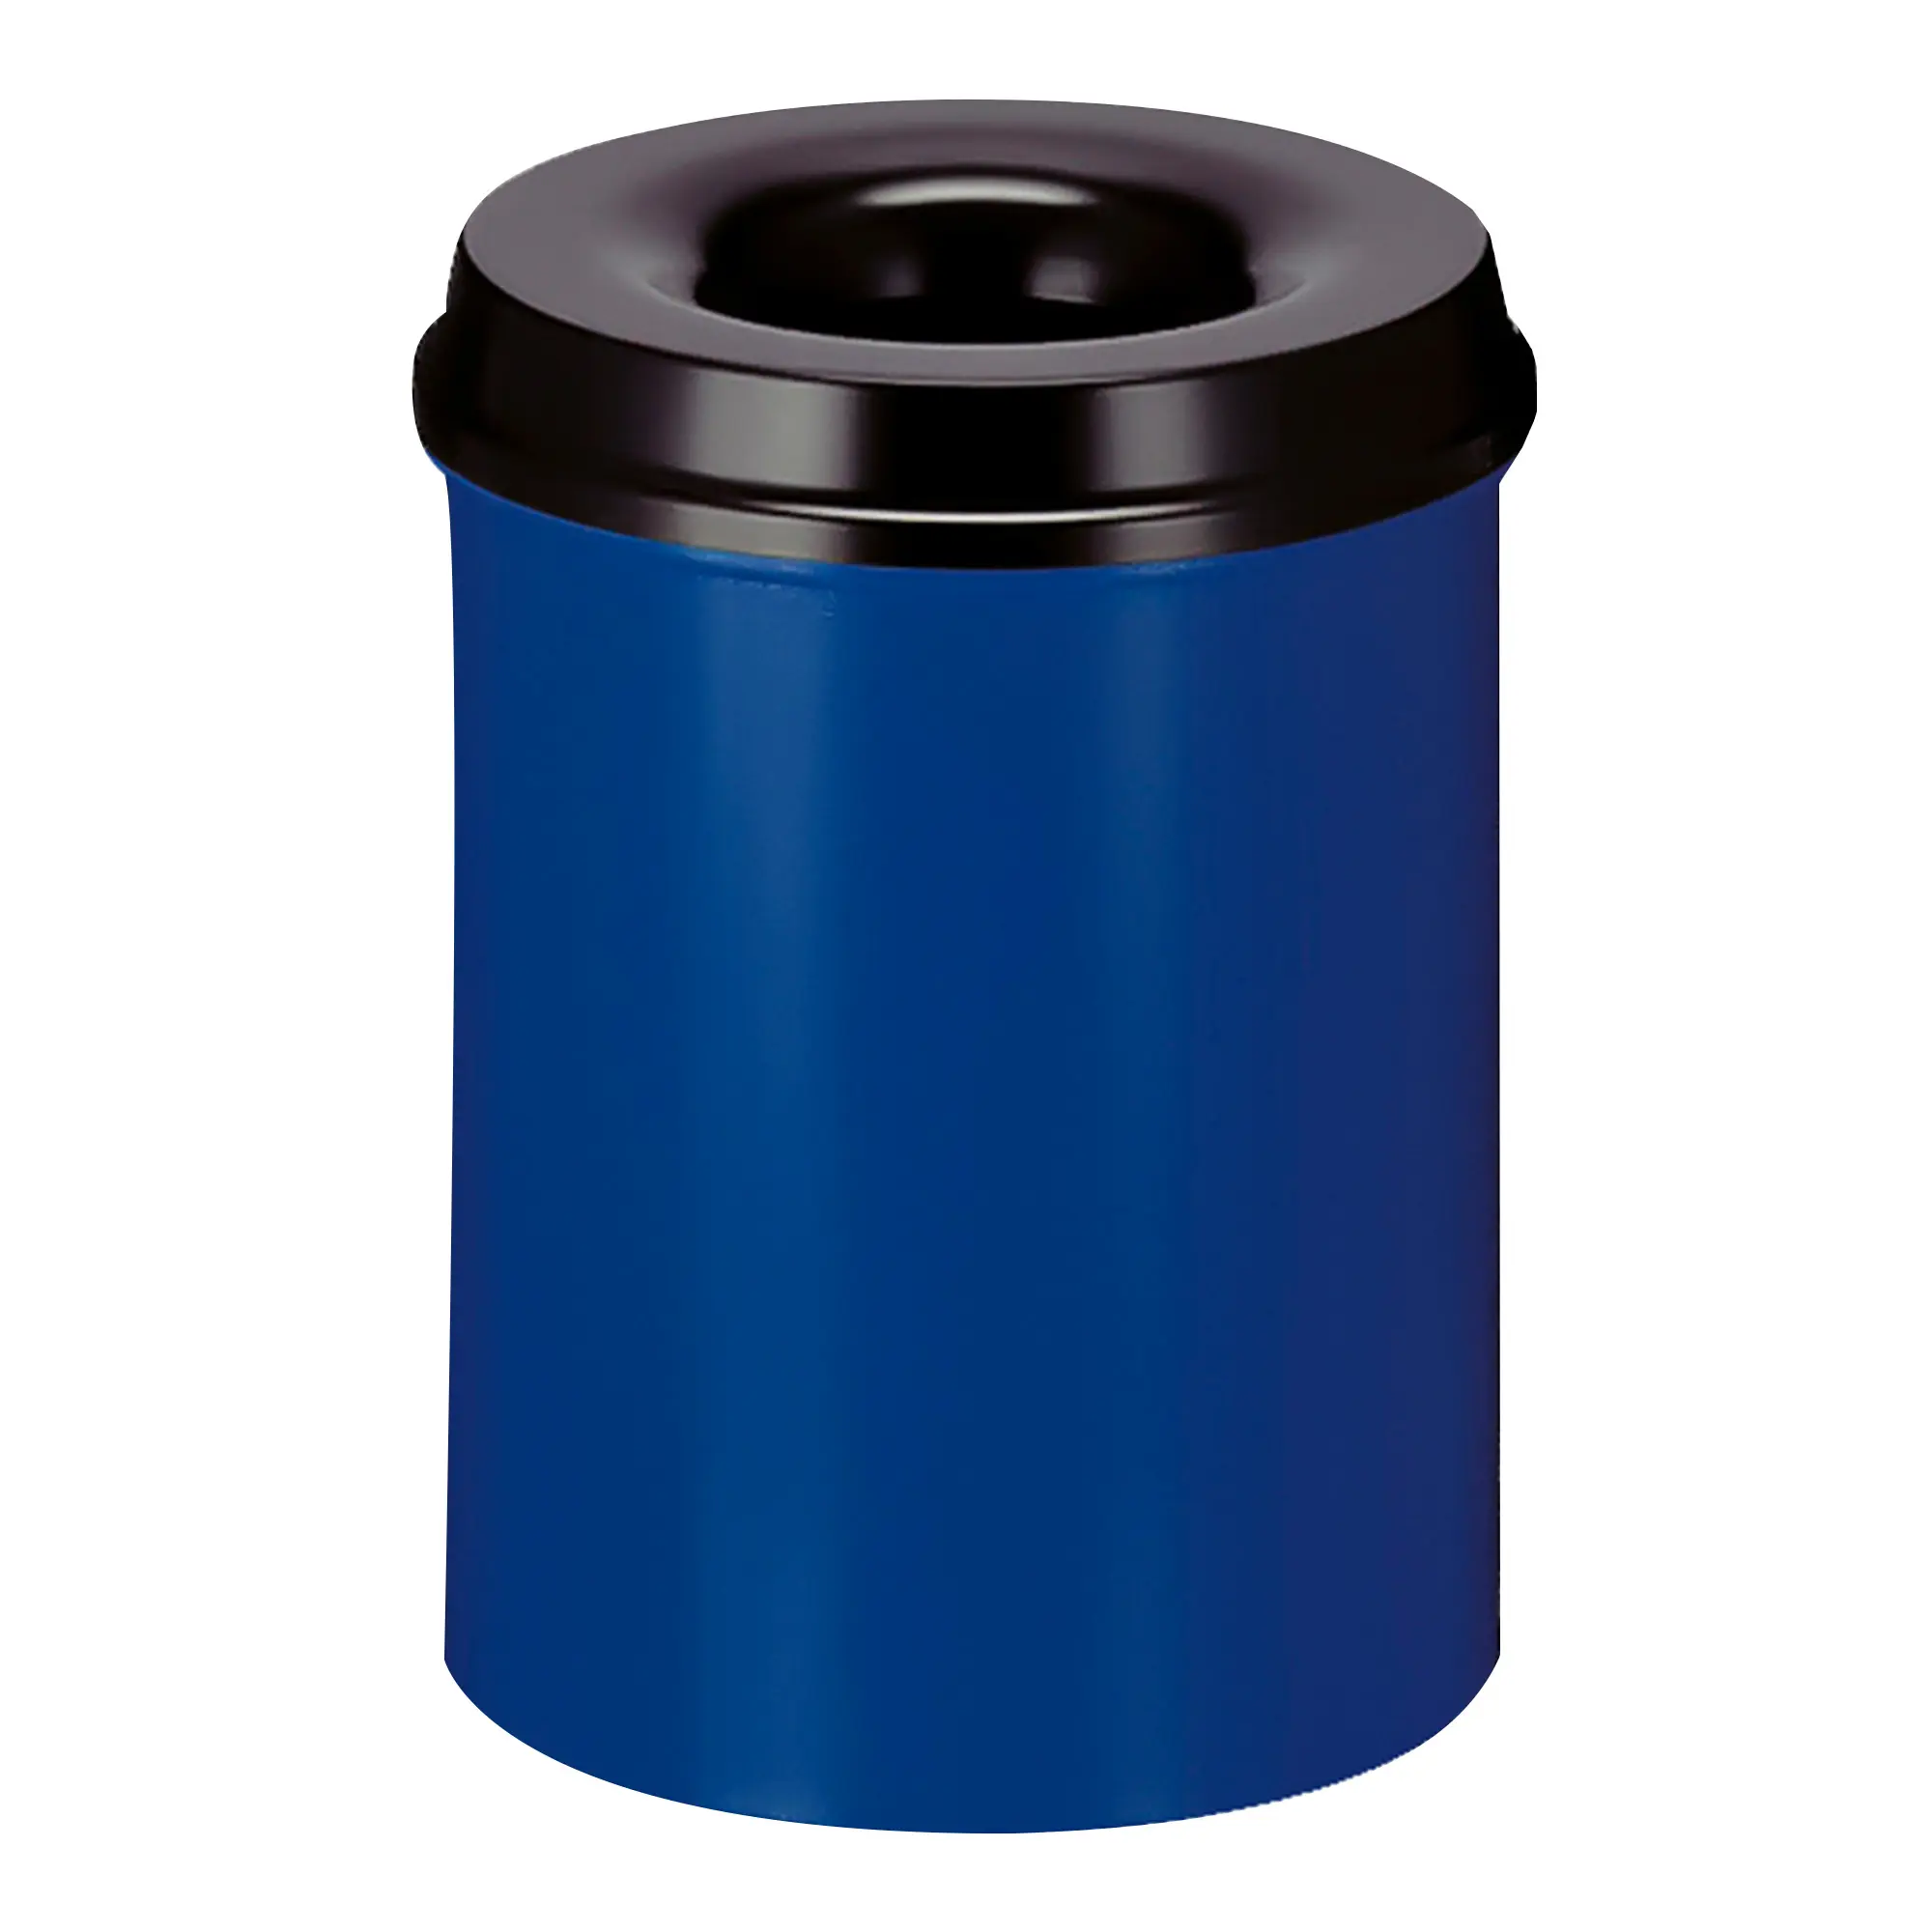 V-Part Feuerlöschender Papierkorb 15 Liter blau/schwarz 31001255_1